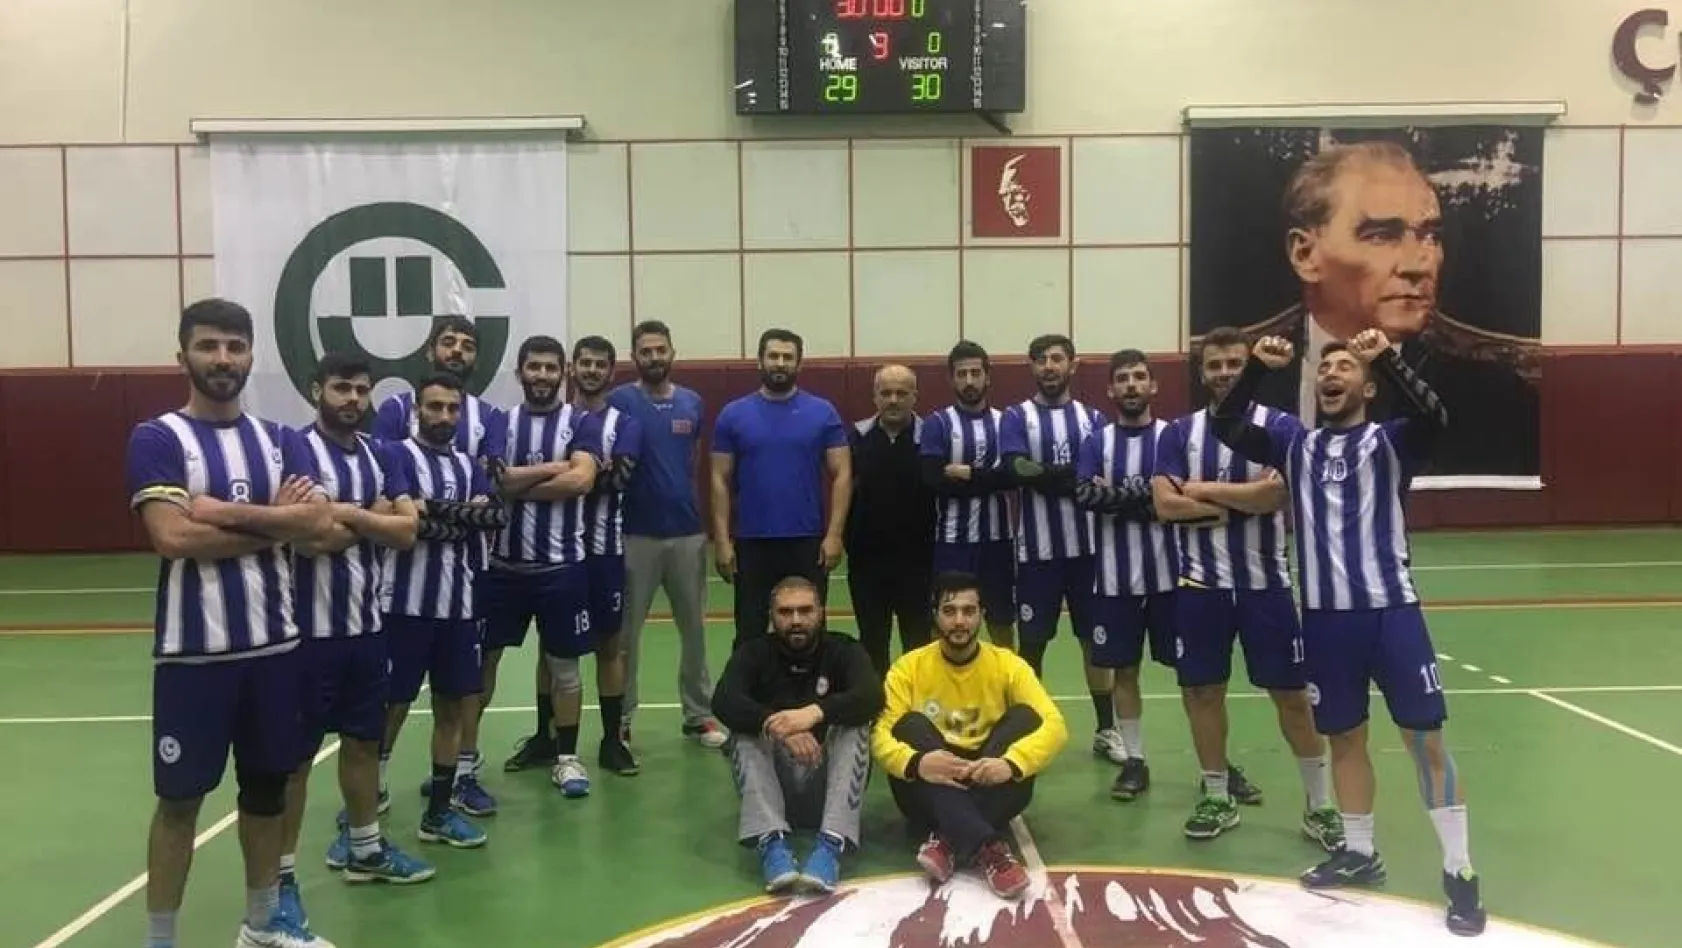 Adıyaman Üniversitesi Hentbol Takımı Türkiye'de ilk 8 takım arasına girdi
